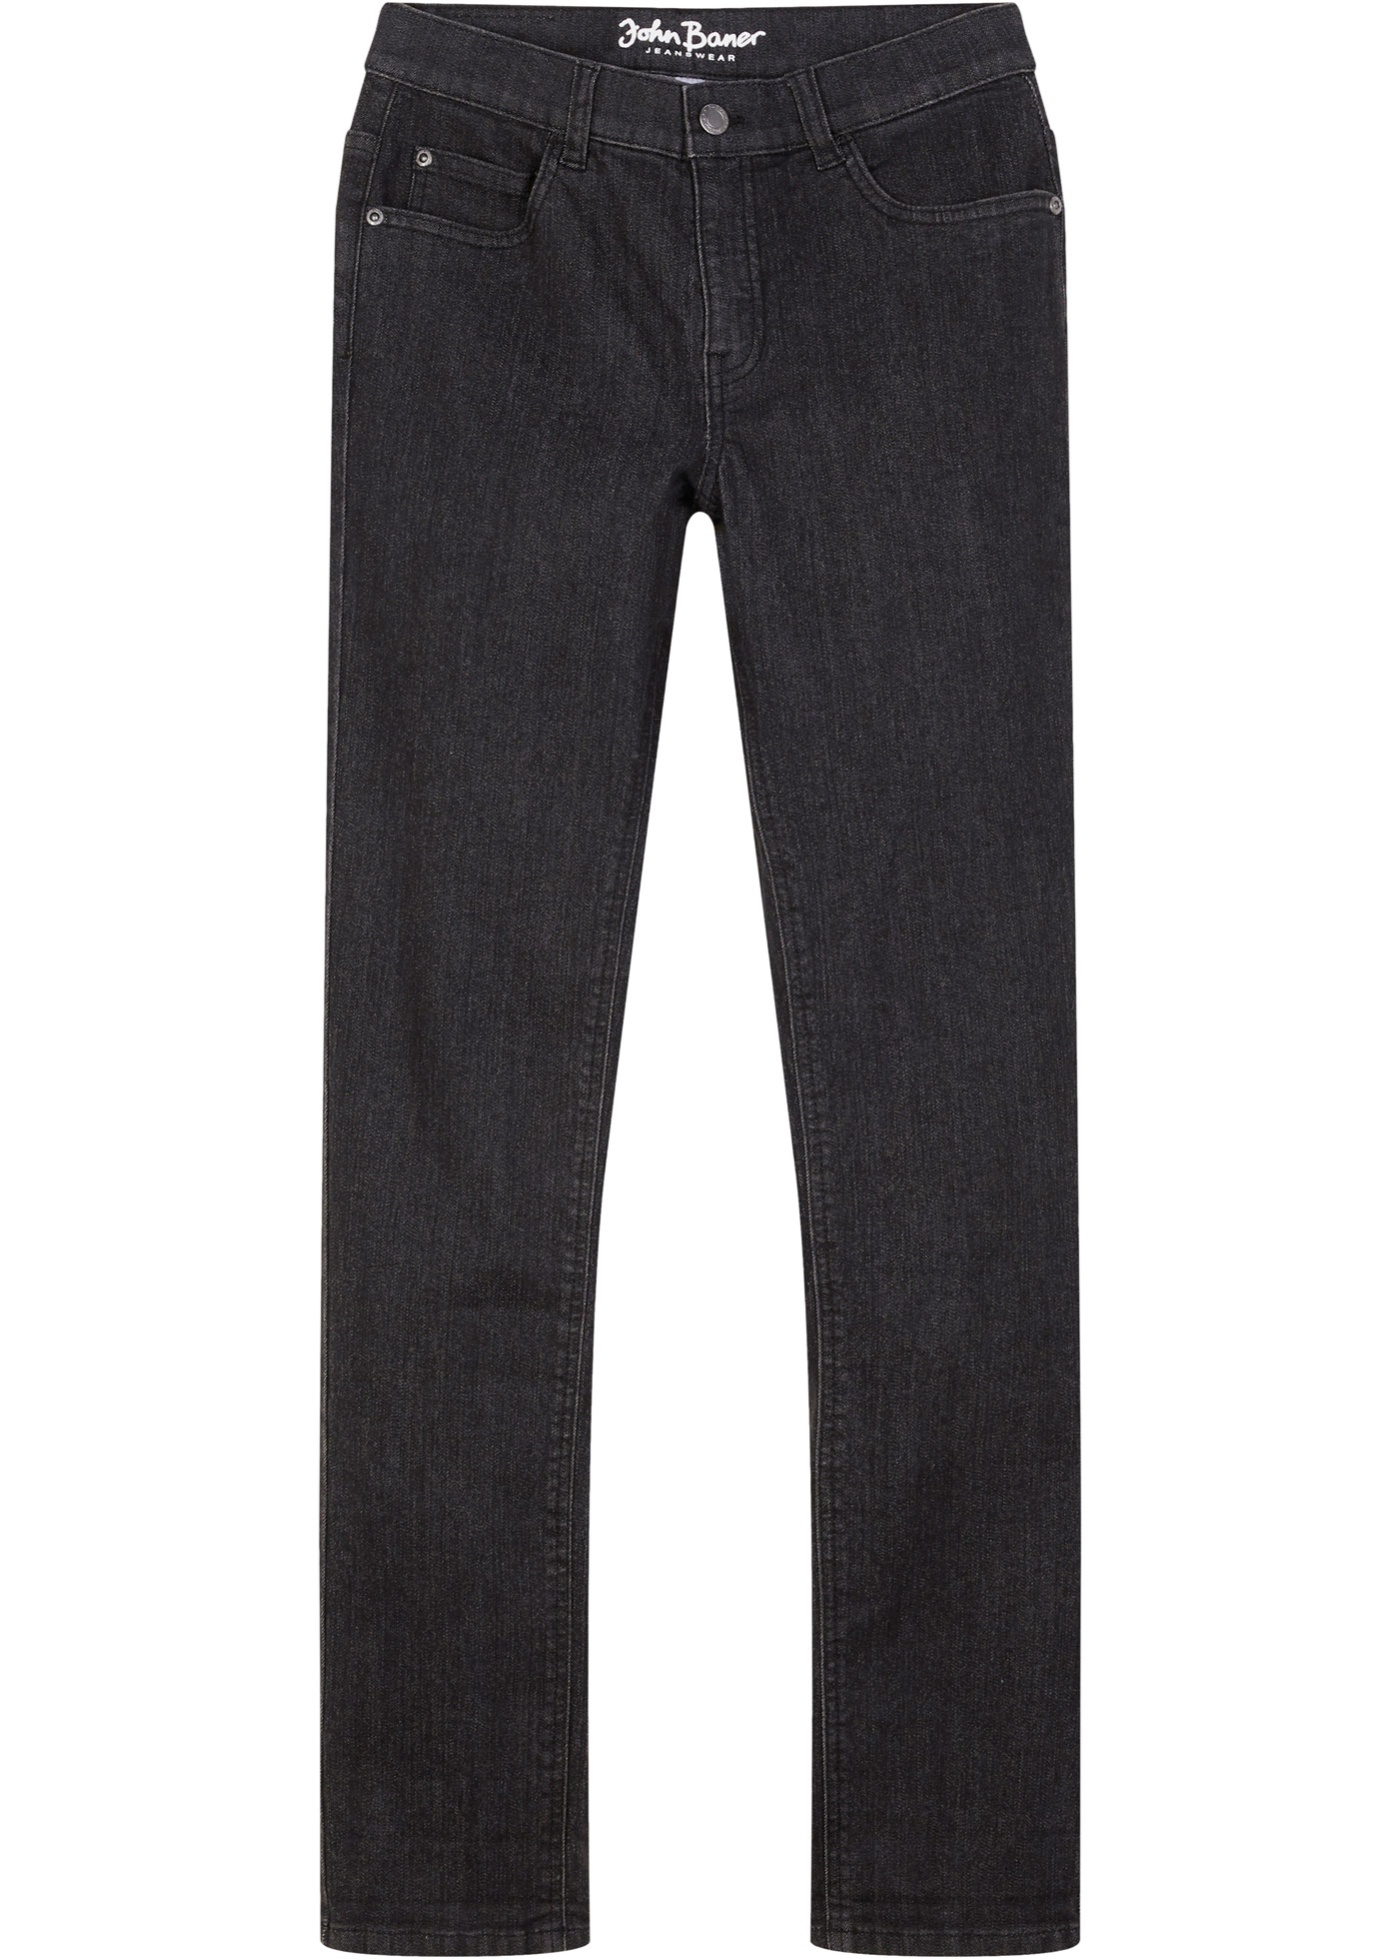 Jeans in felpa cinquetasche, slim fit (Nero) - John Baner JEANSWEAR